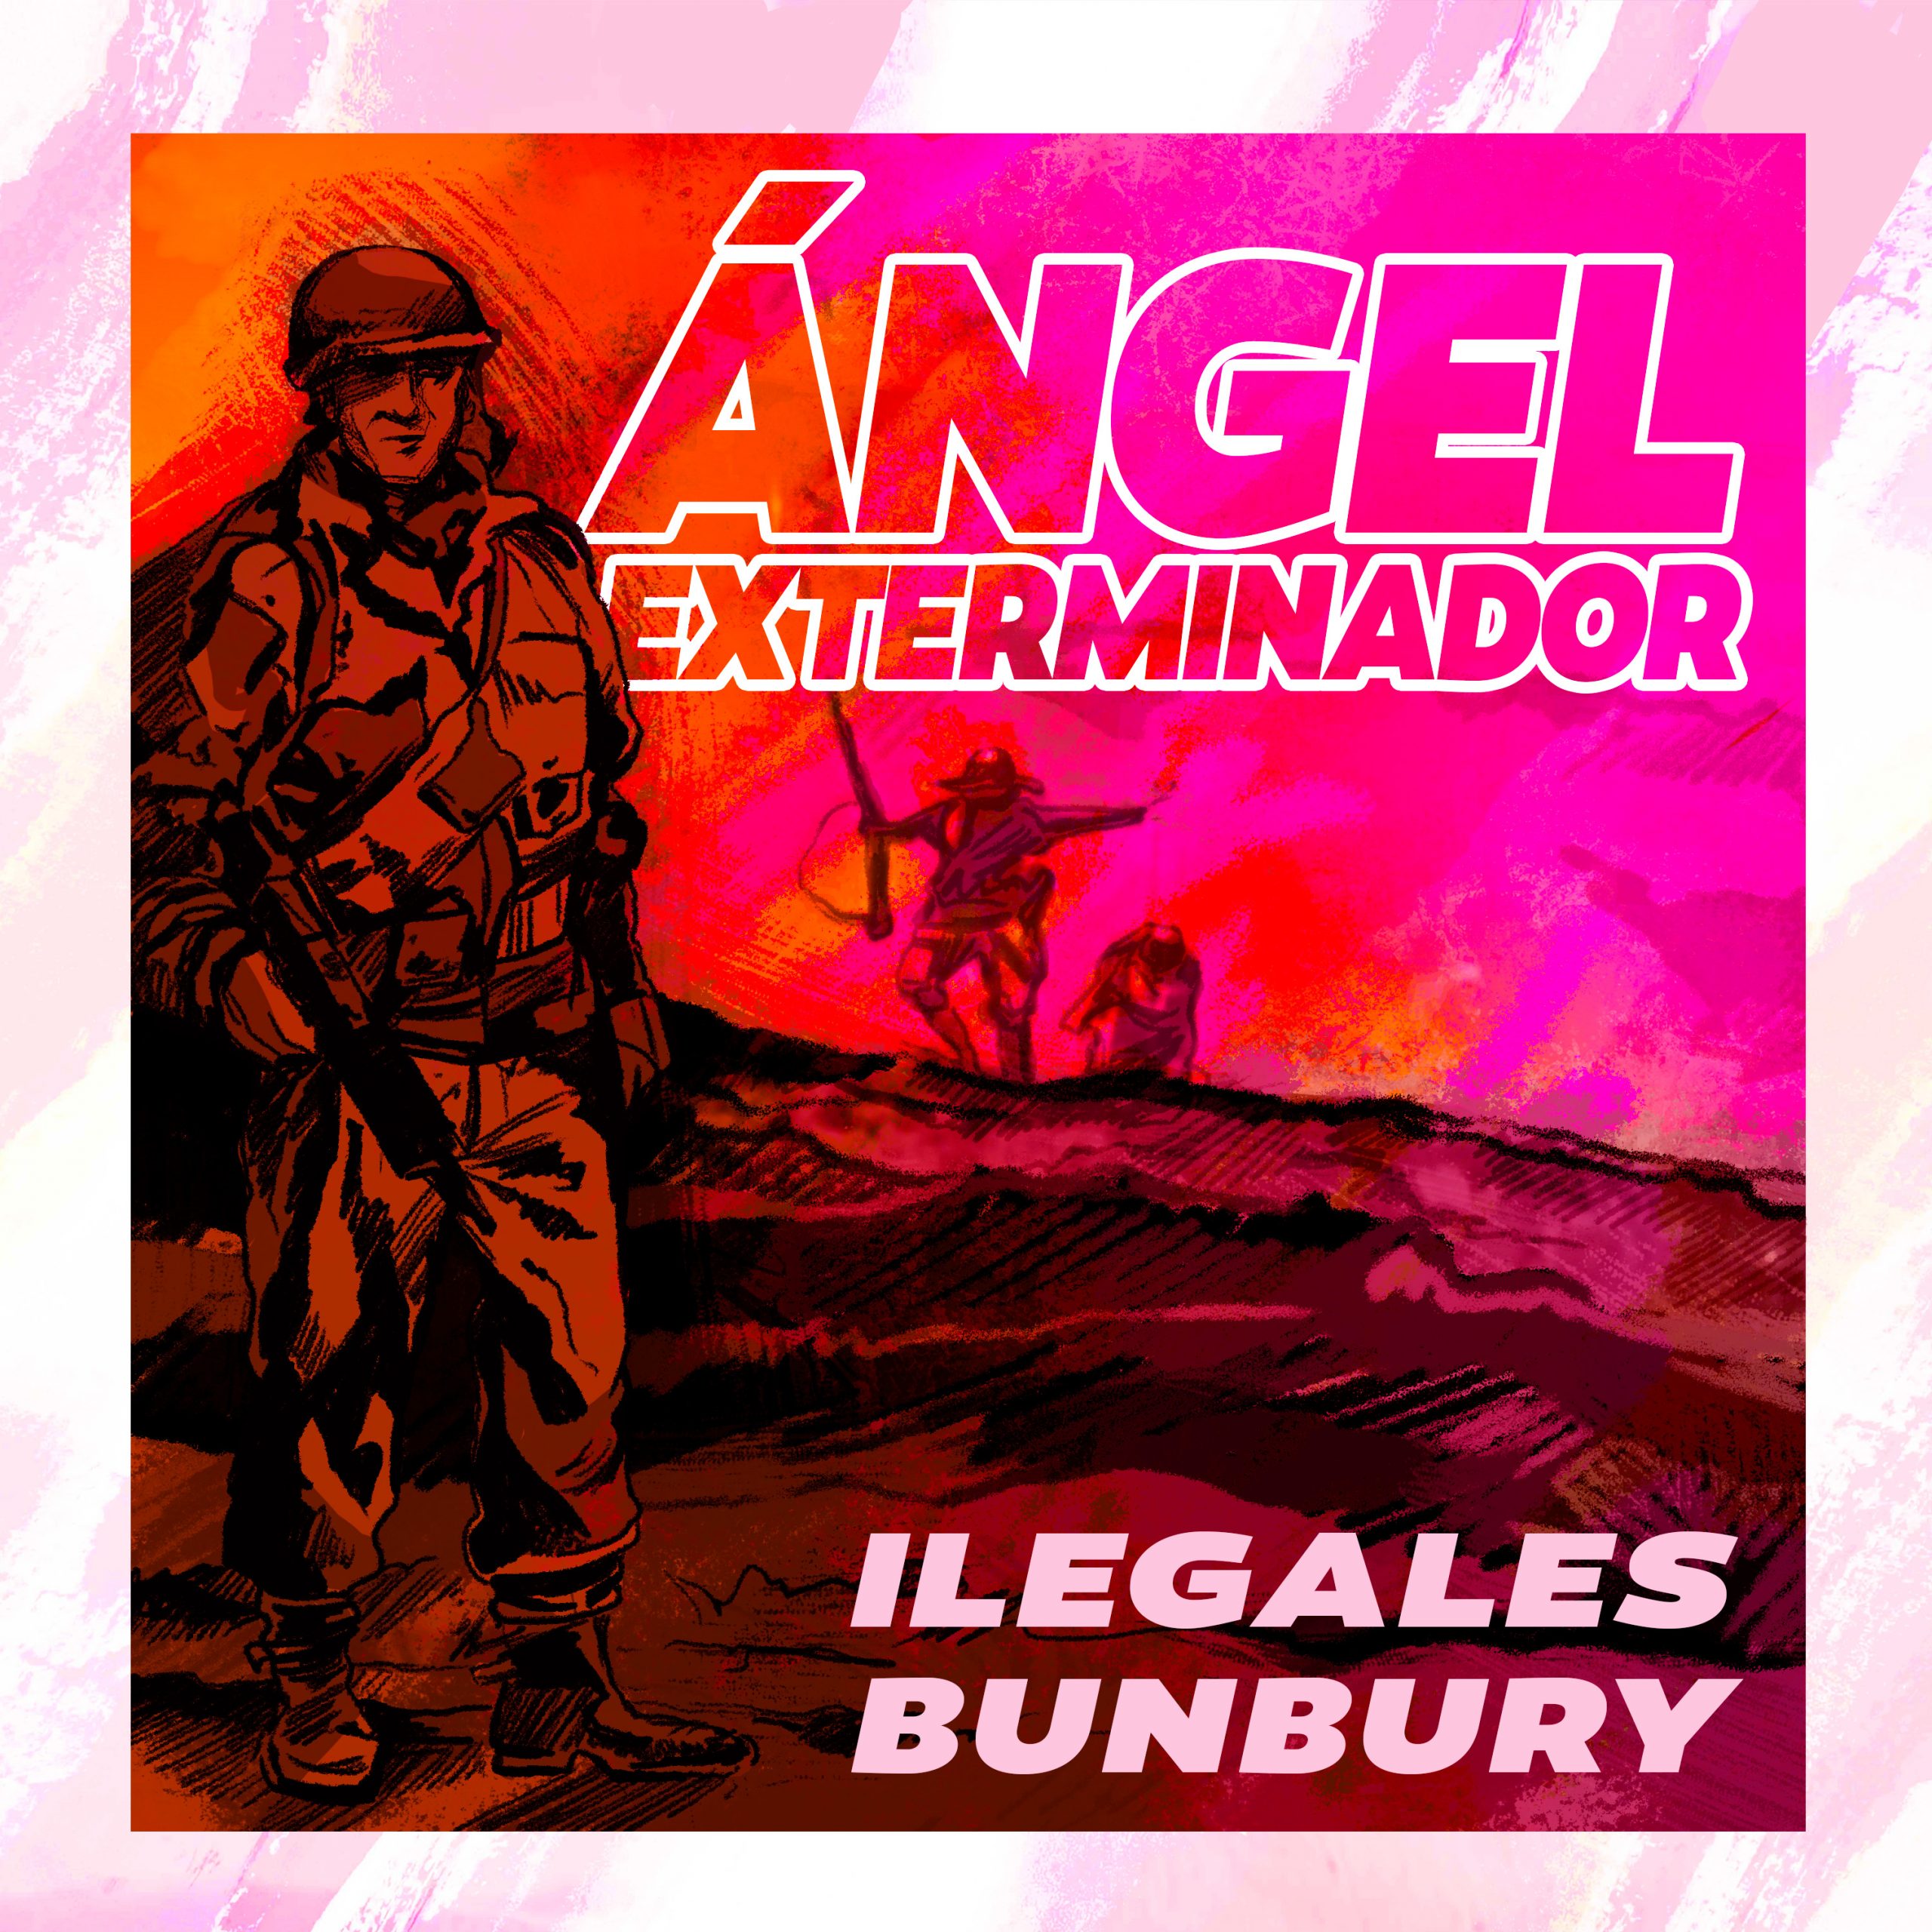 Ilegales con Bunbury - Ángel exterminador (Video)